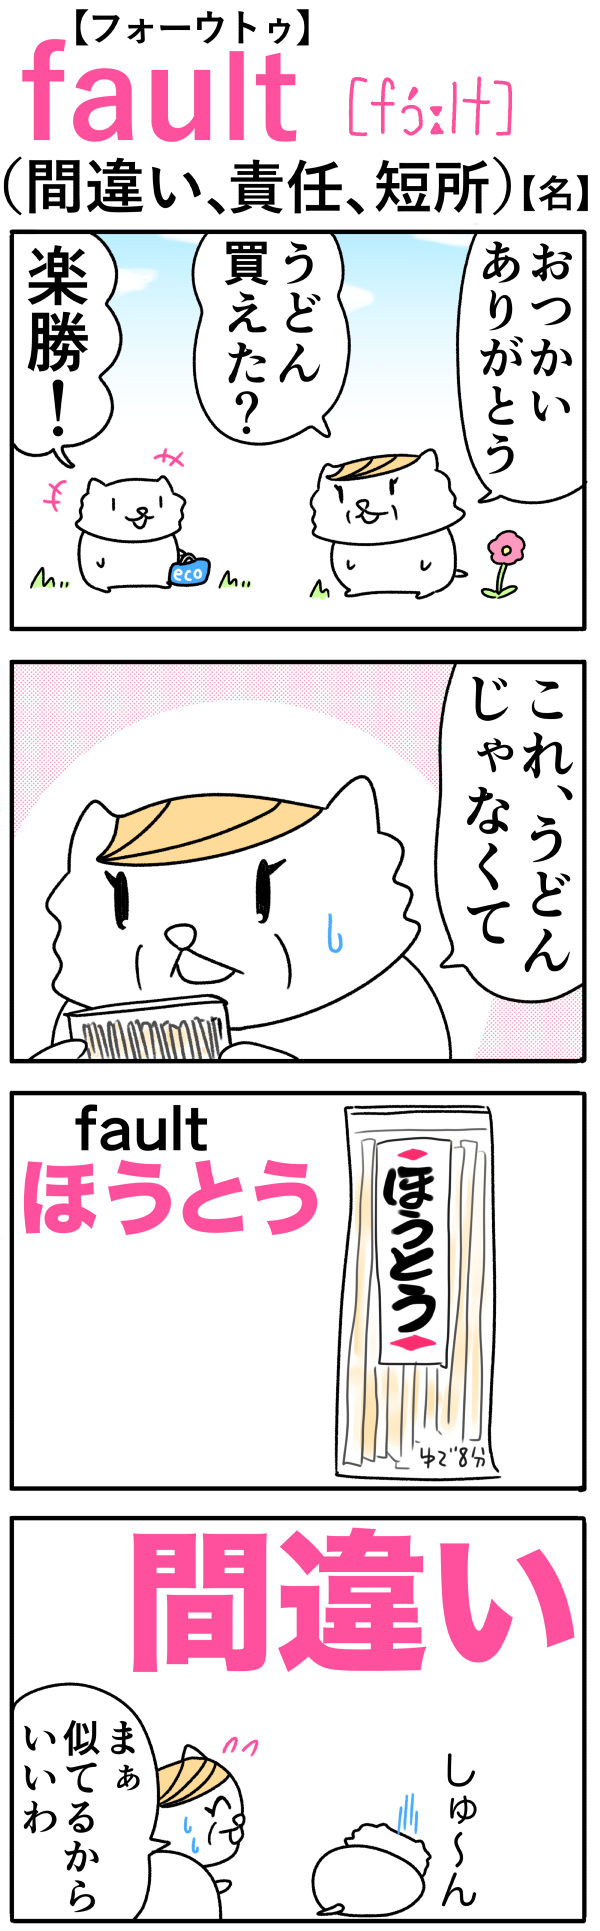 fault（間違い）